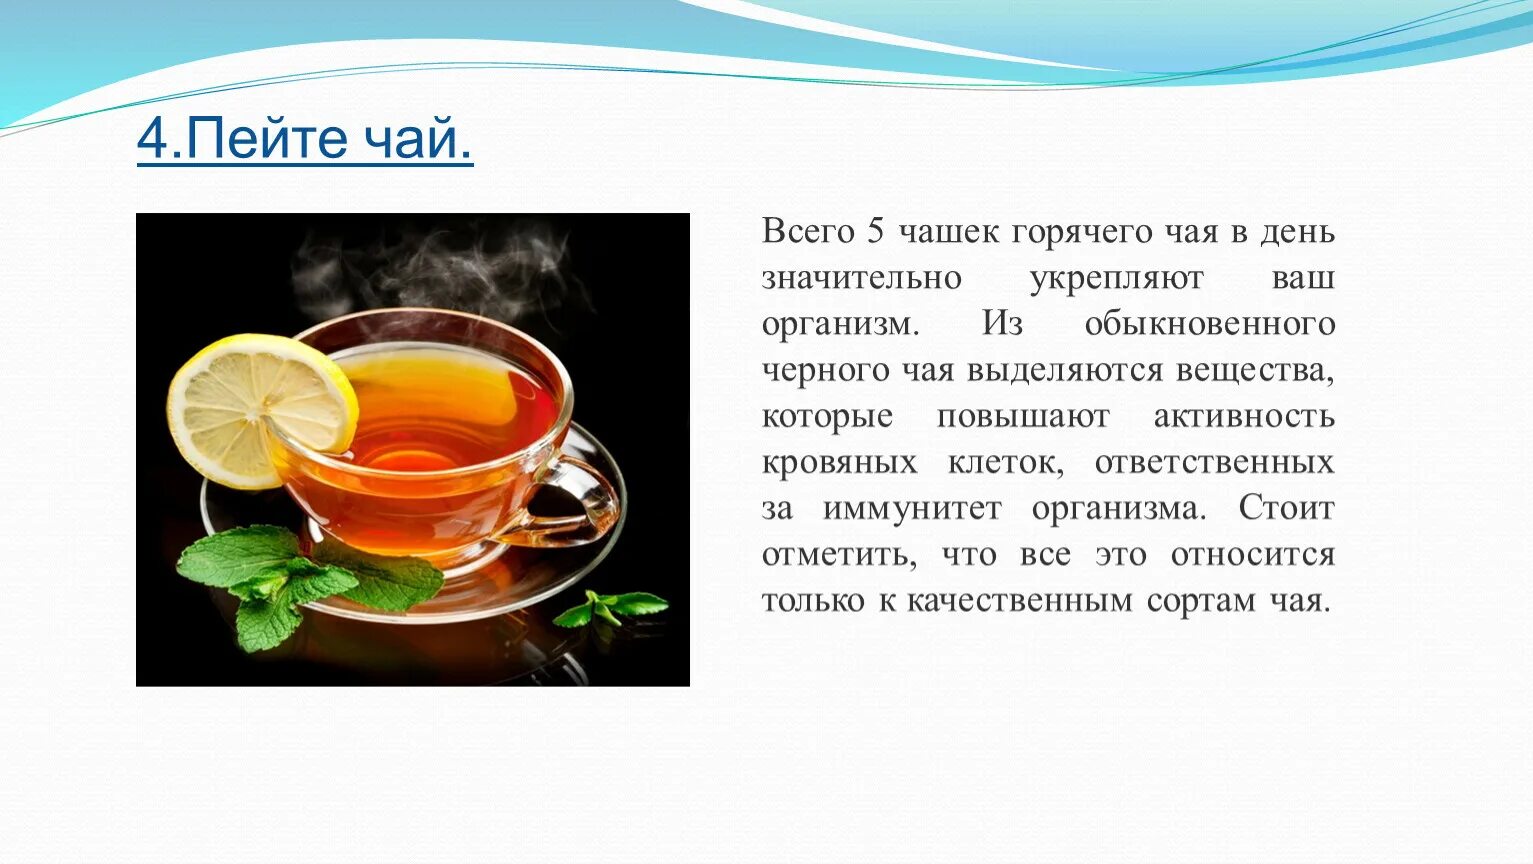 Чай картинки для презентации. Температура кружки с горячим чаем. С чем можно сравнить горячий чай. Горячий чай Оби.